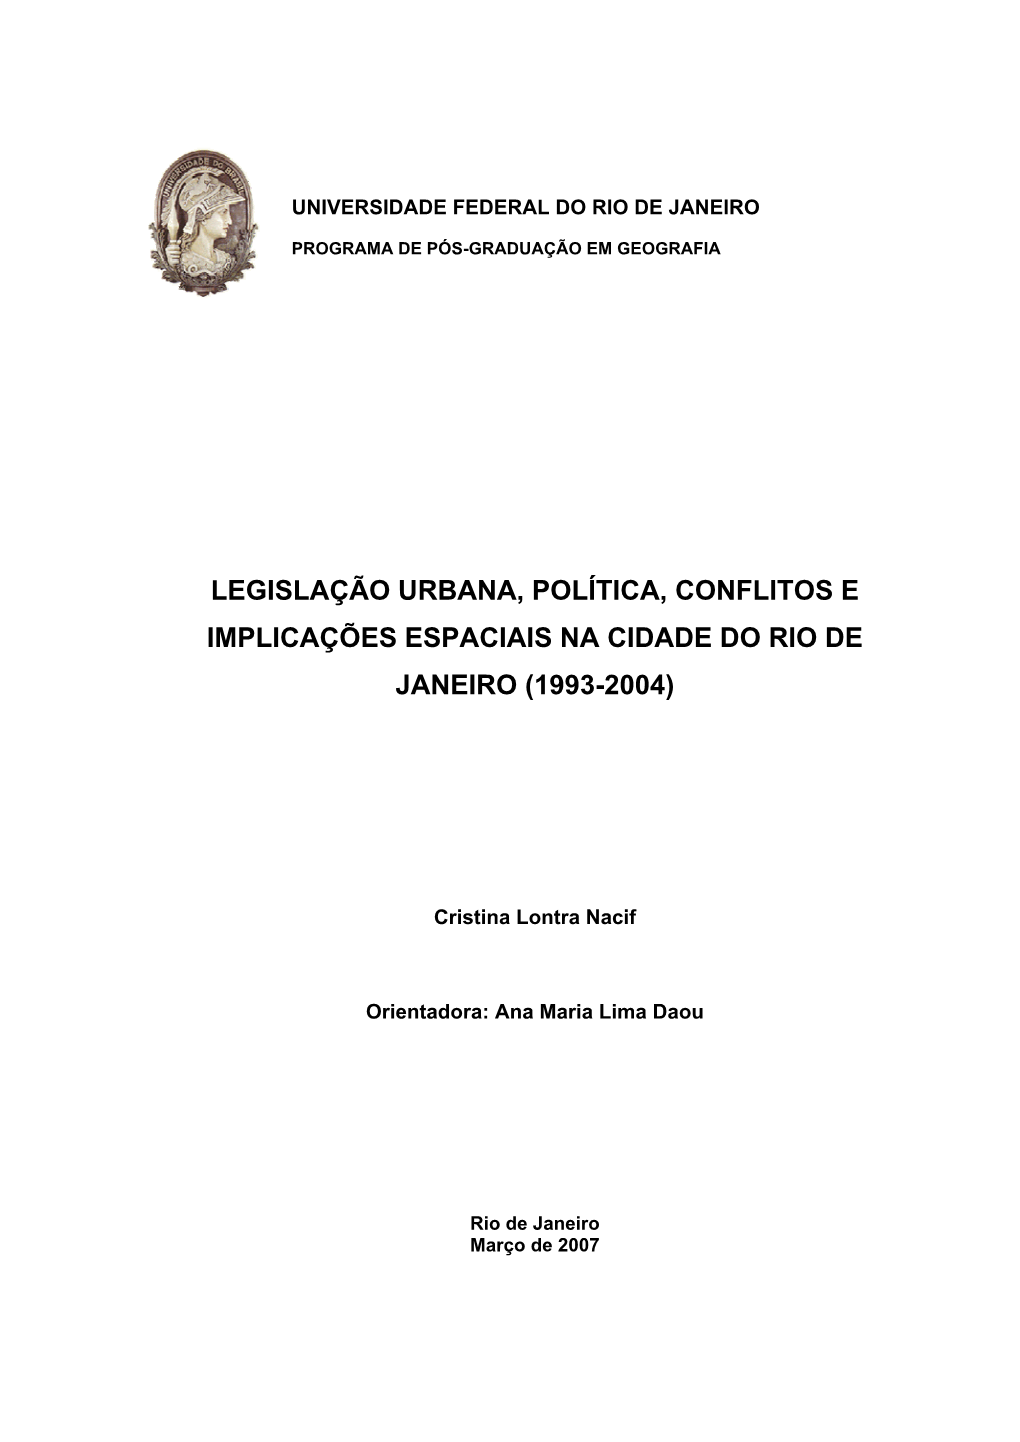 Legislação Urbana, Política, Conflitos E Implicações Espaciais Na Cidade Do Rio De Janeiro (1993-2004)